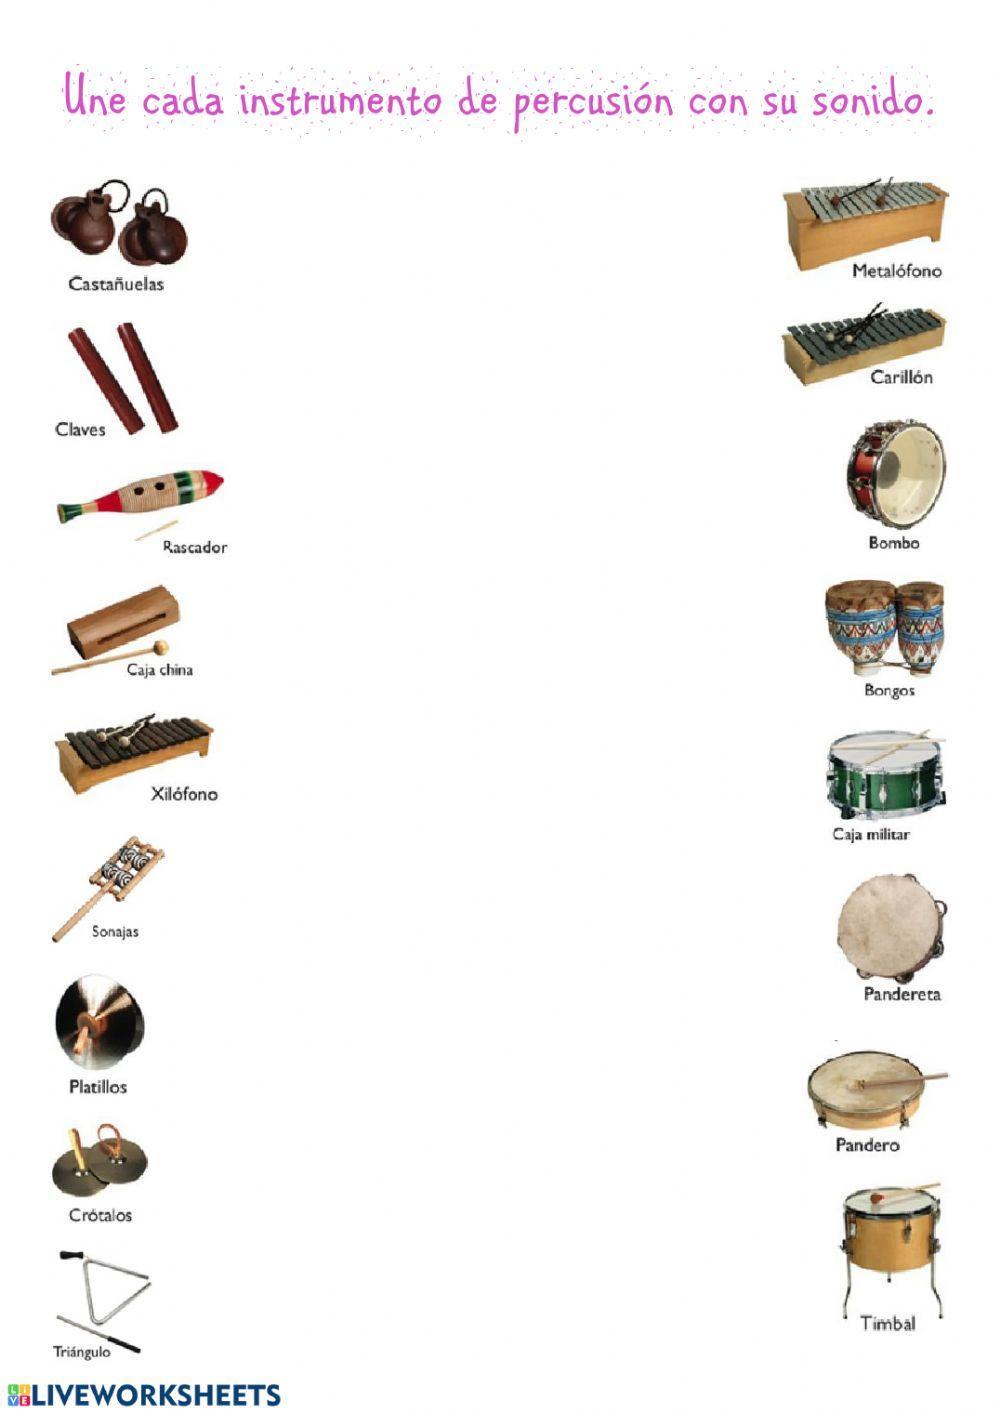 Identifica los instrumentos de percusión